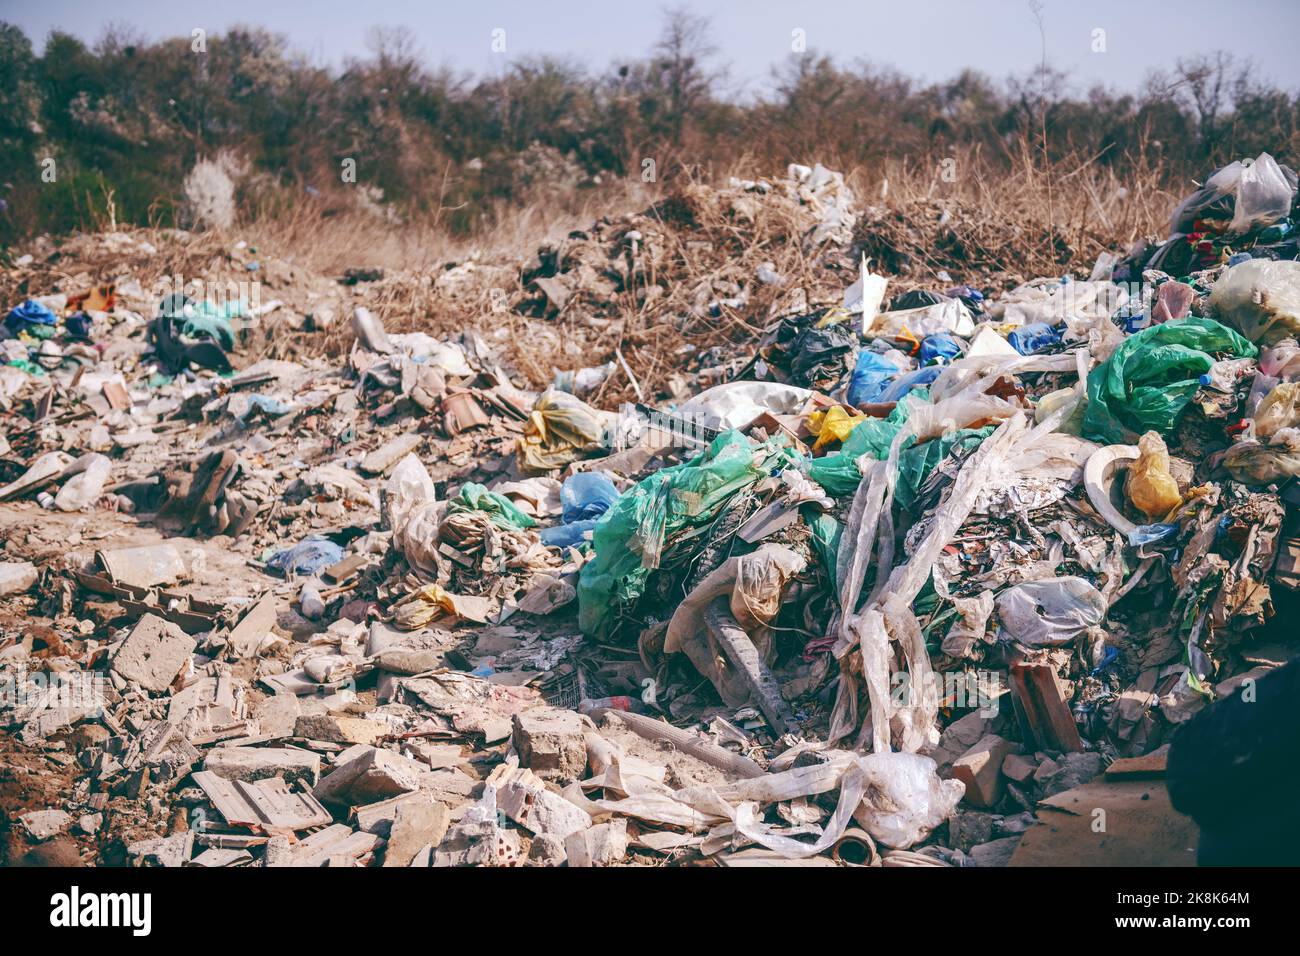 Preuve de négligence humaine.Sur la photo une grosse pile de déchets ruinant la nature. Banque D'Images